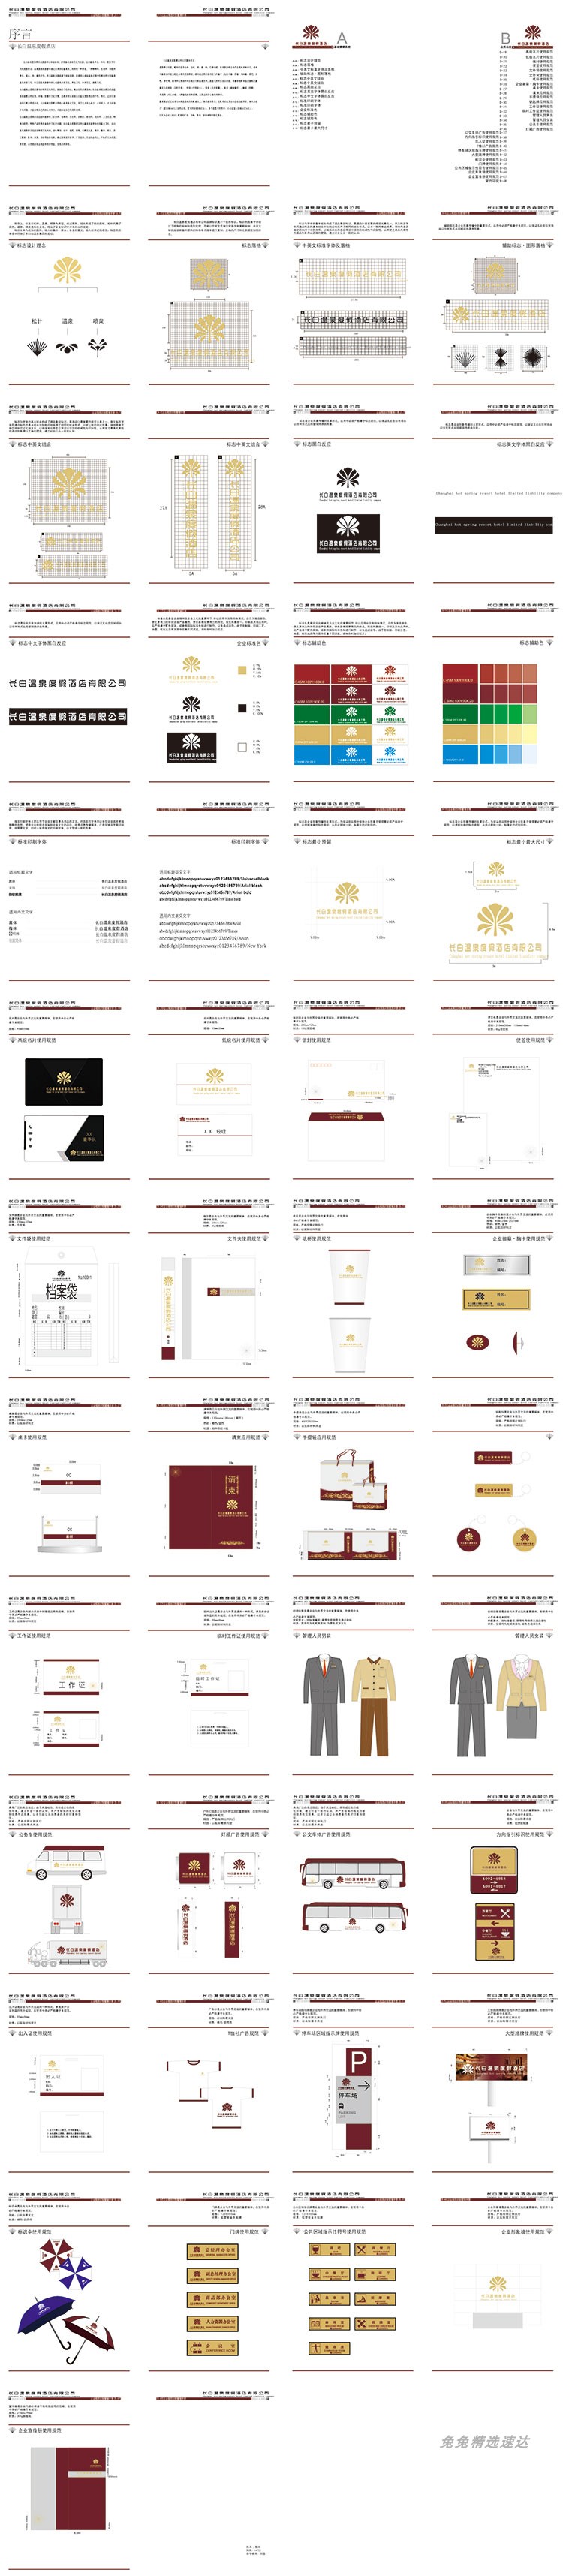 公司企业VI视觉应用设计全套手册模板品牌酒店AI格式导视素材 第31张